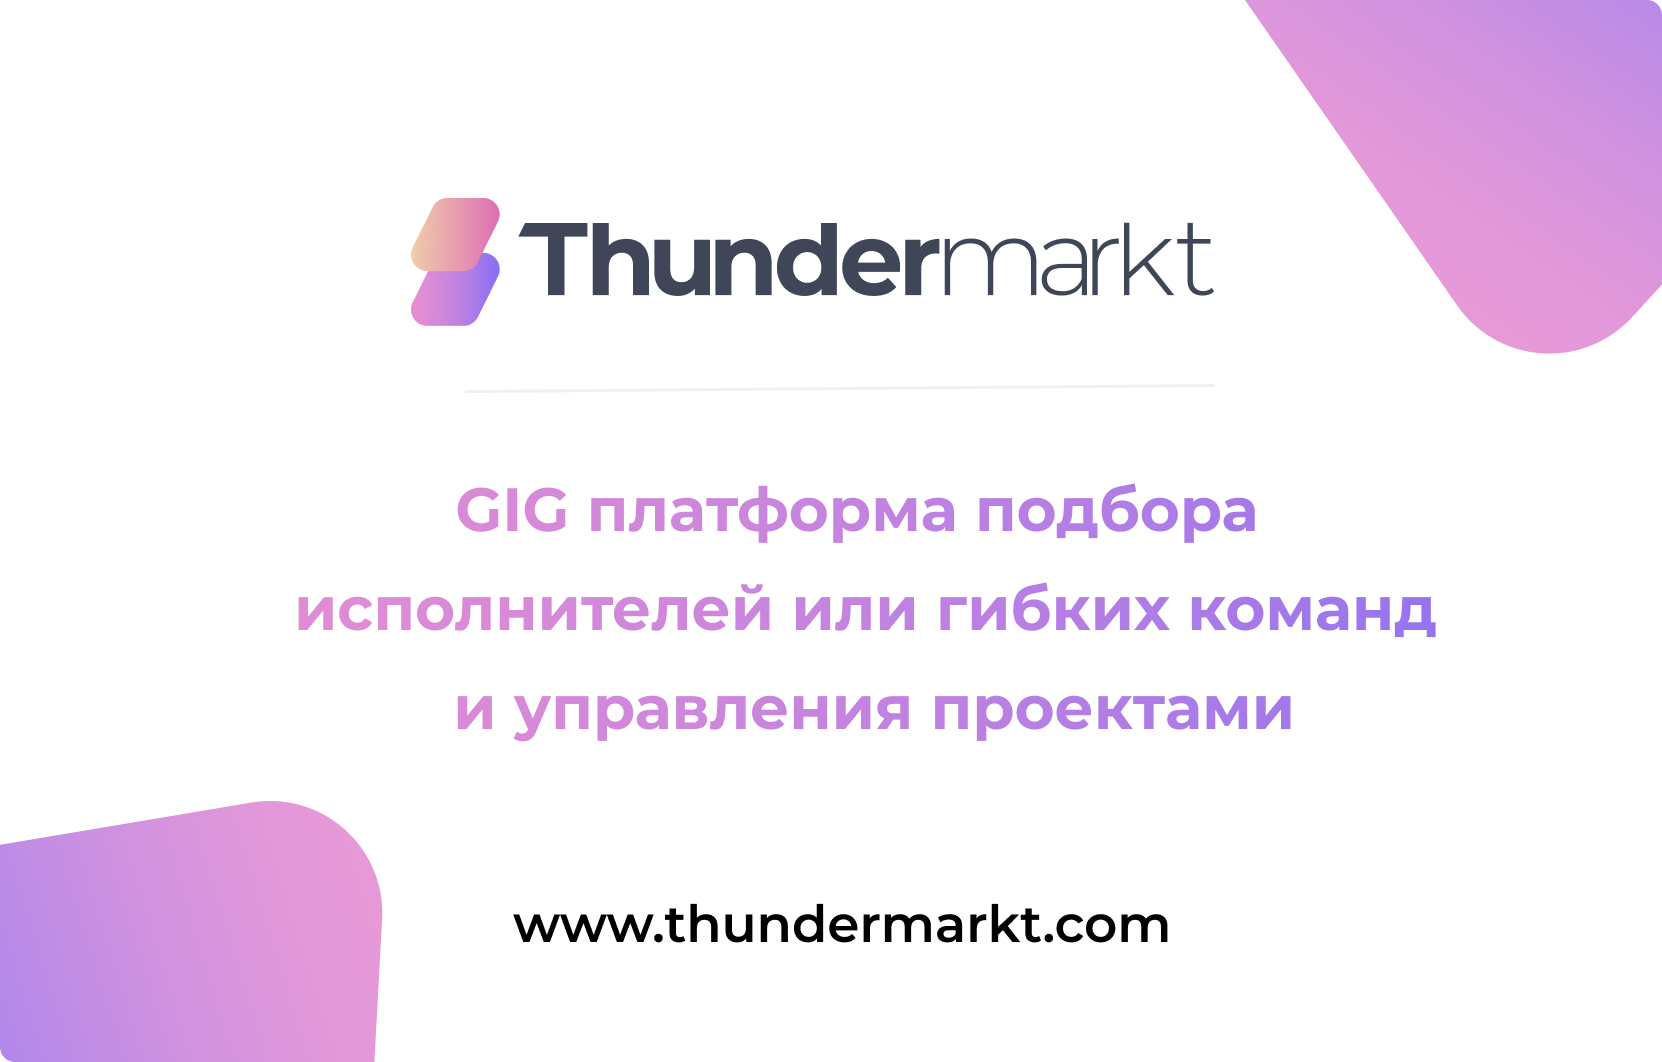 Thundermarkt - платформа для подбора специалистов и создания гибких команд